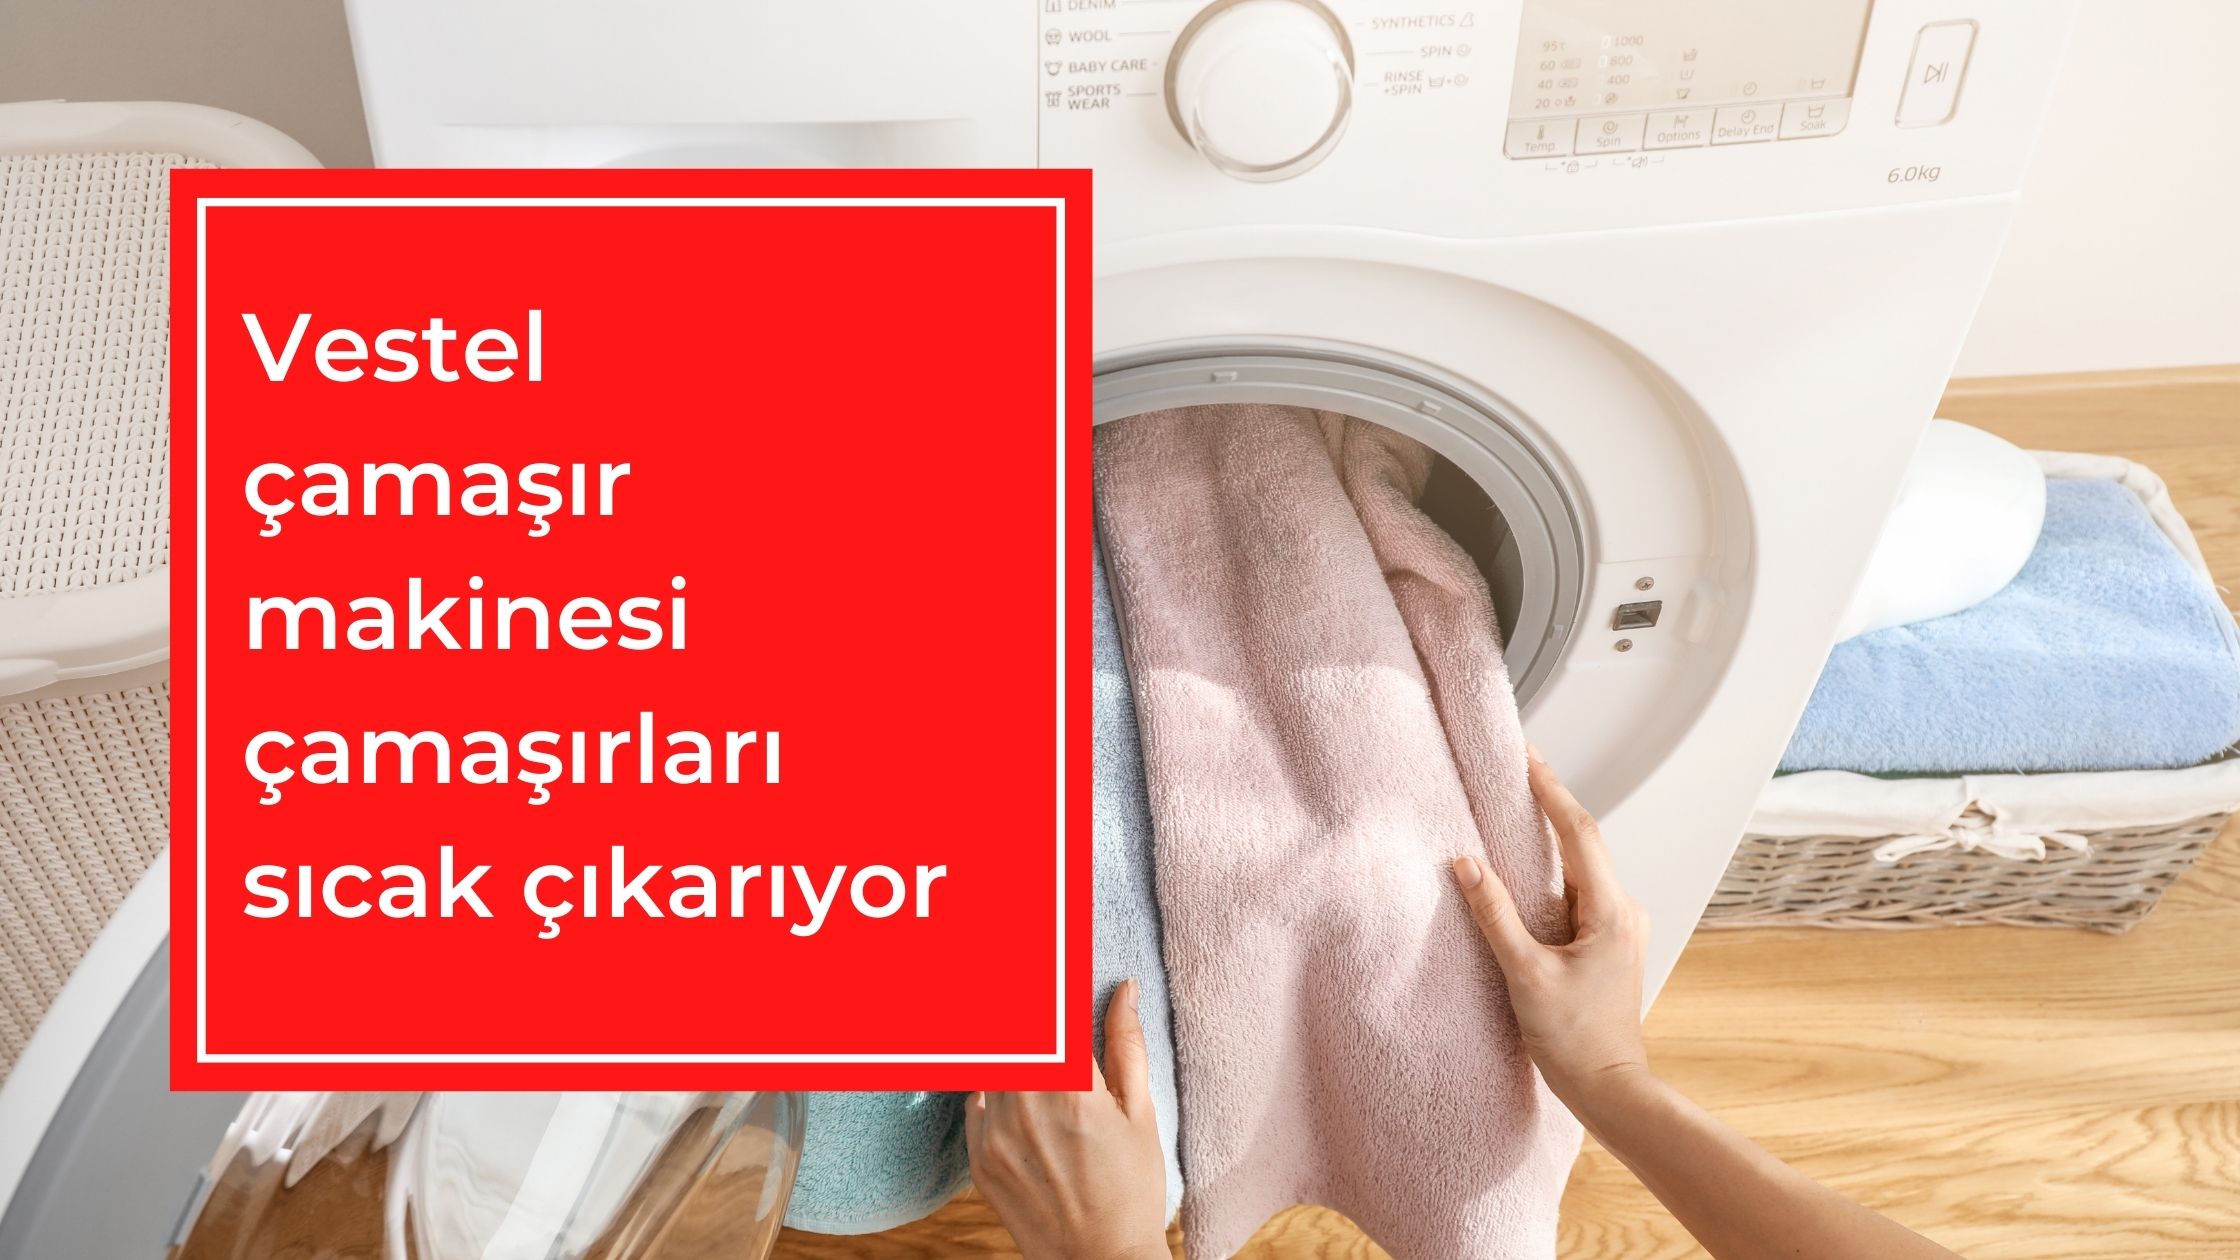 Vestel Çamaşır Makinesi Çamaşırları Sıcak Çıkarıyor